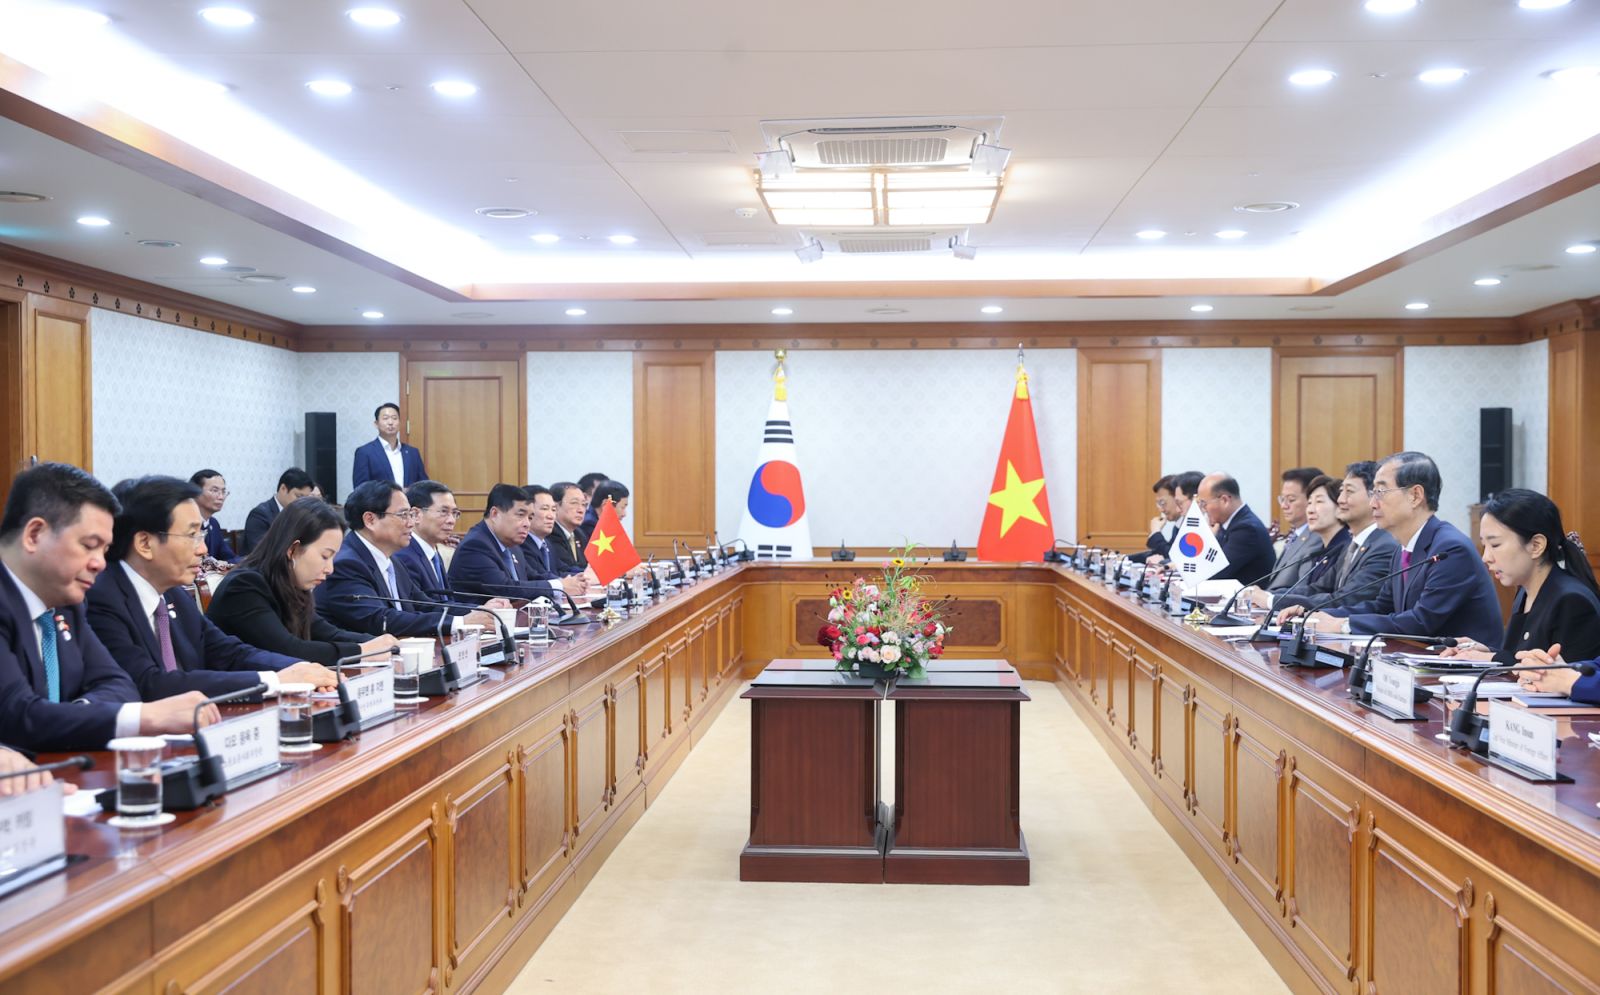 Việt Nam - Hàn Quốc ký 9 văn kiện hợp tác, hướng tới 150 tỷ USD thương mại song phương